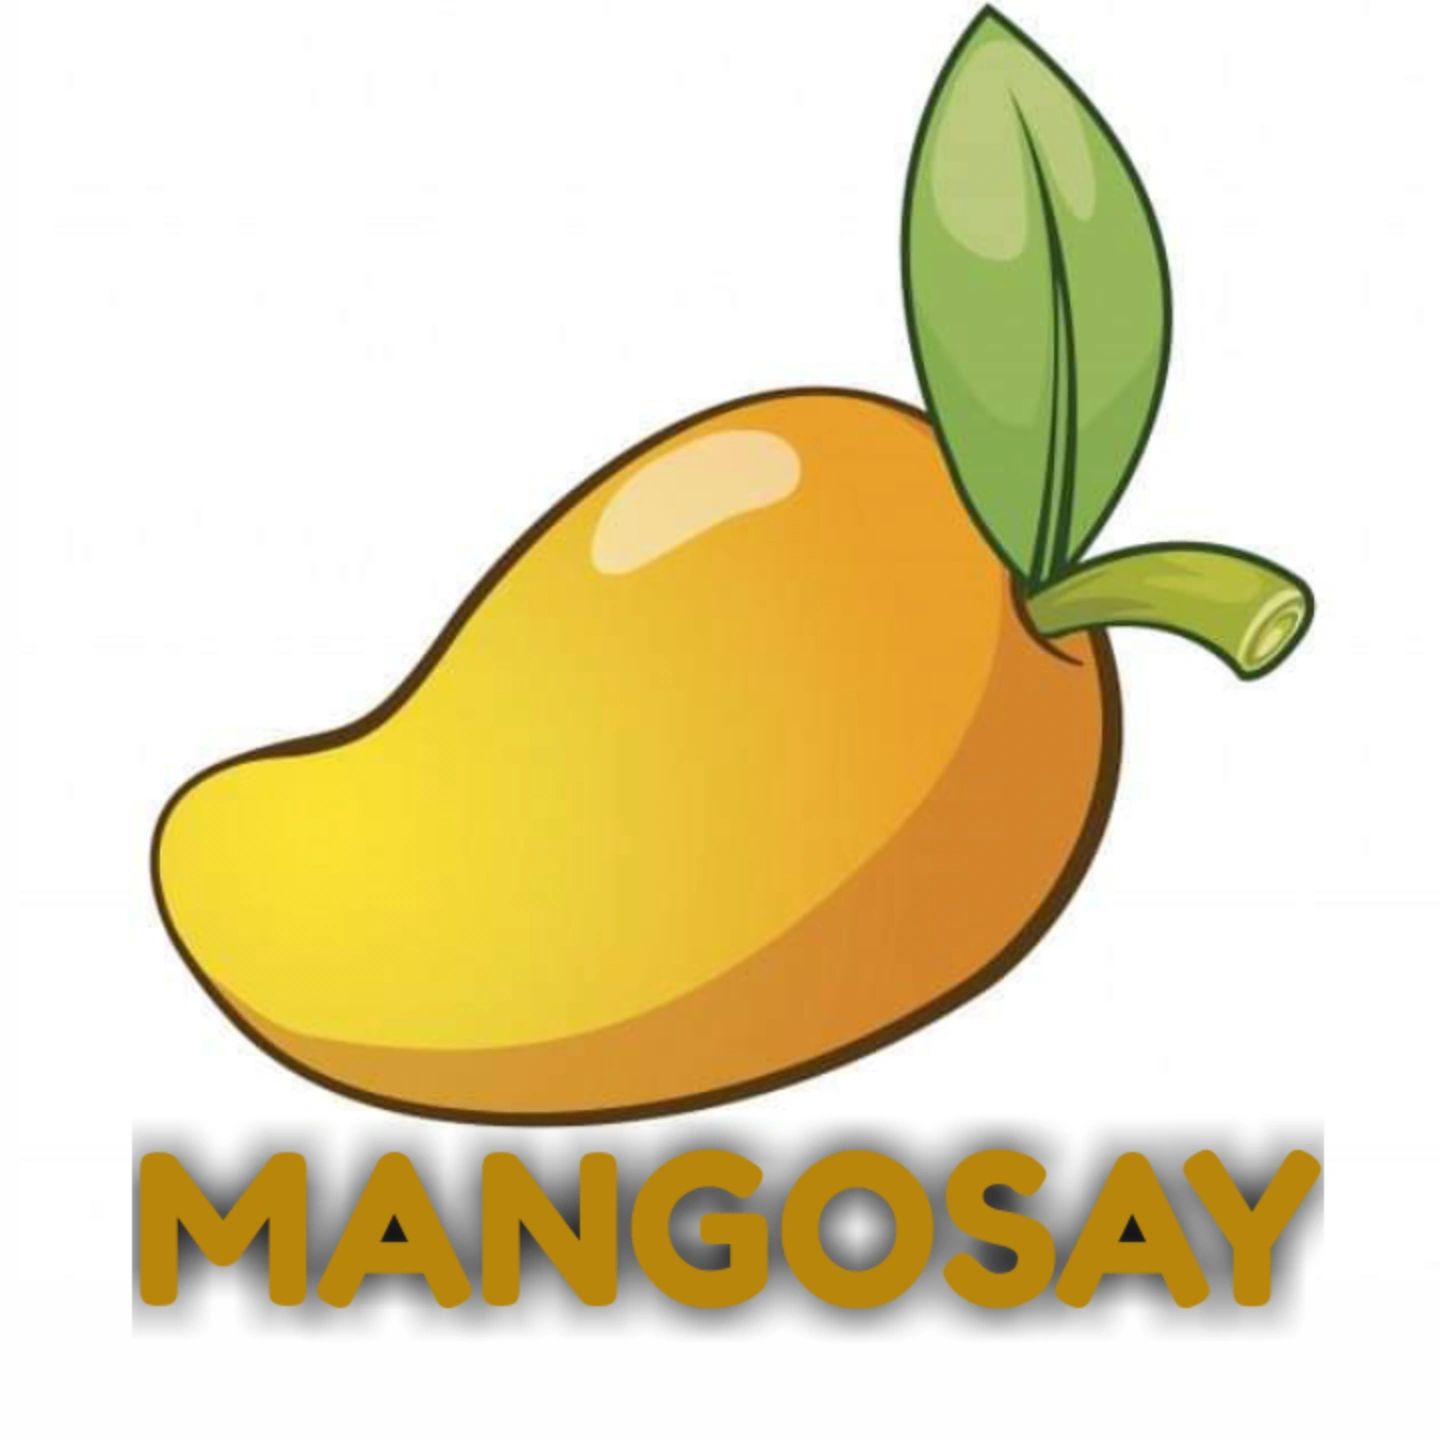 Mangosay